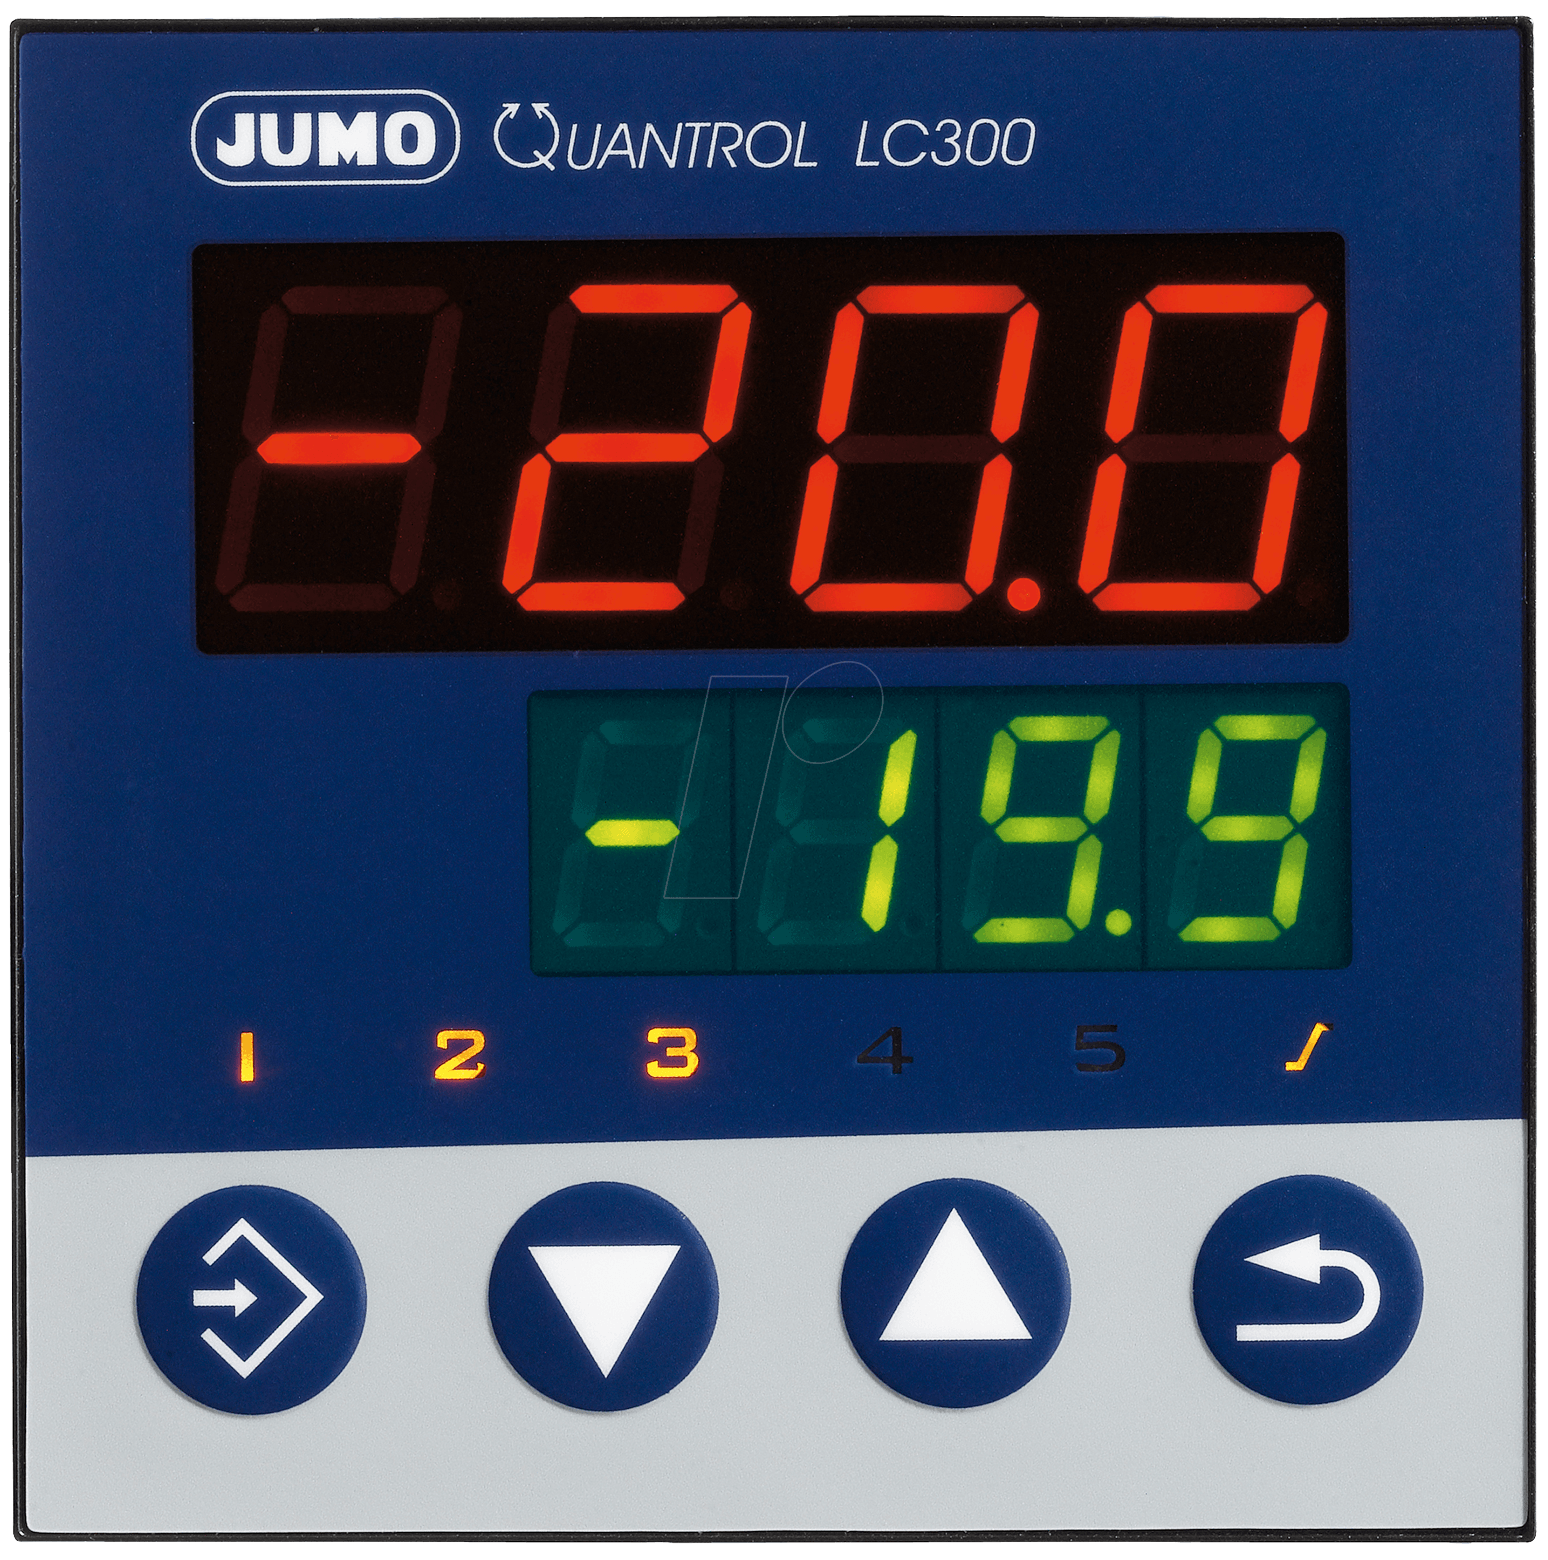 QUAN LC300 D 240 - PID-Regler Quantrol LC300, -5 ... +55 °C von Jumo